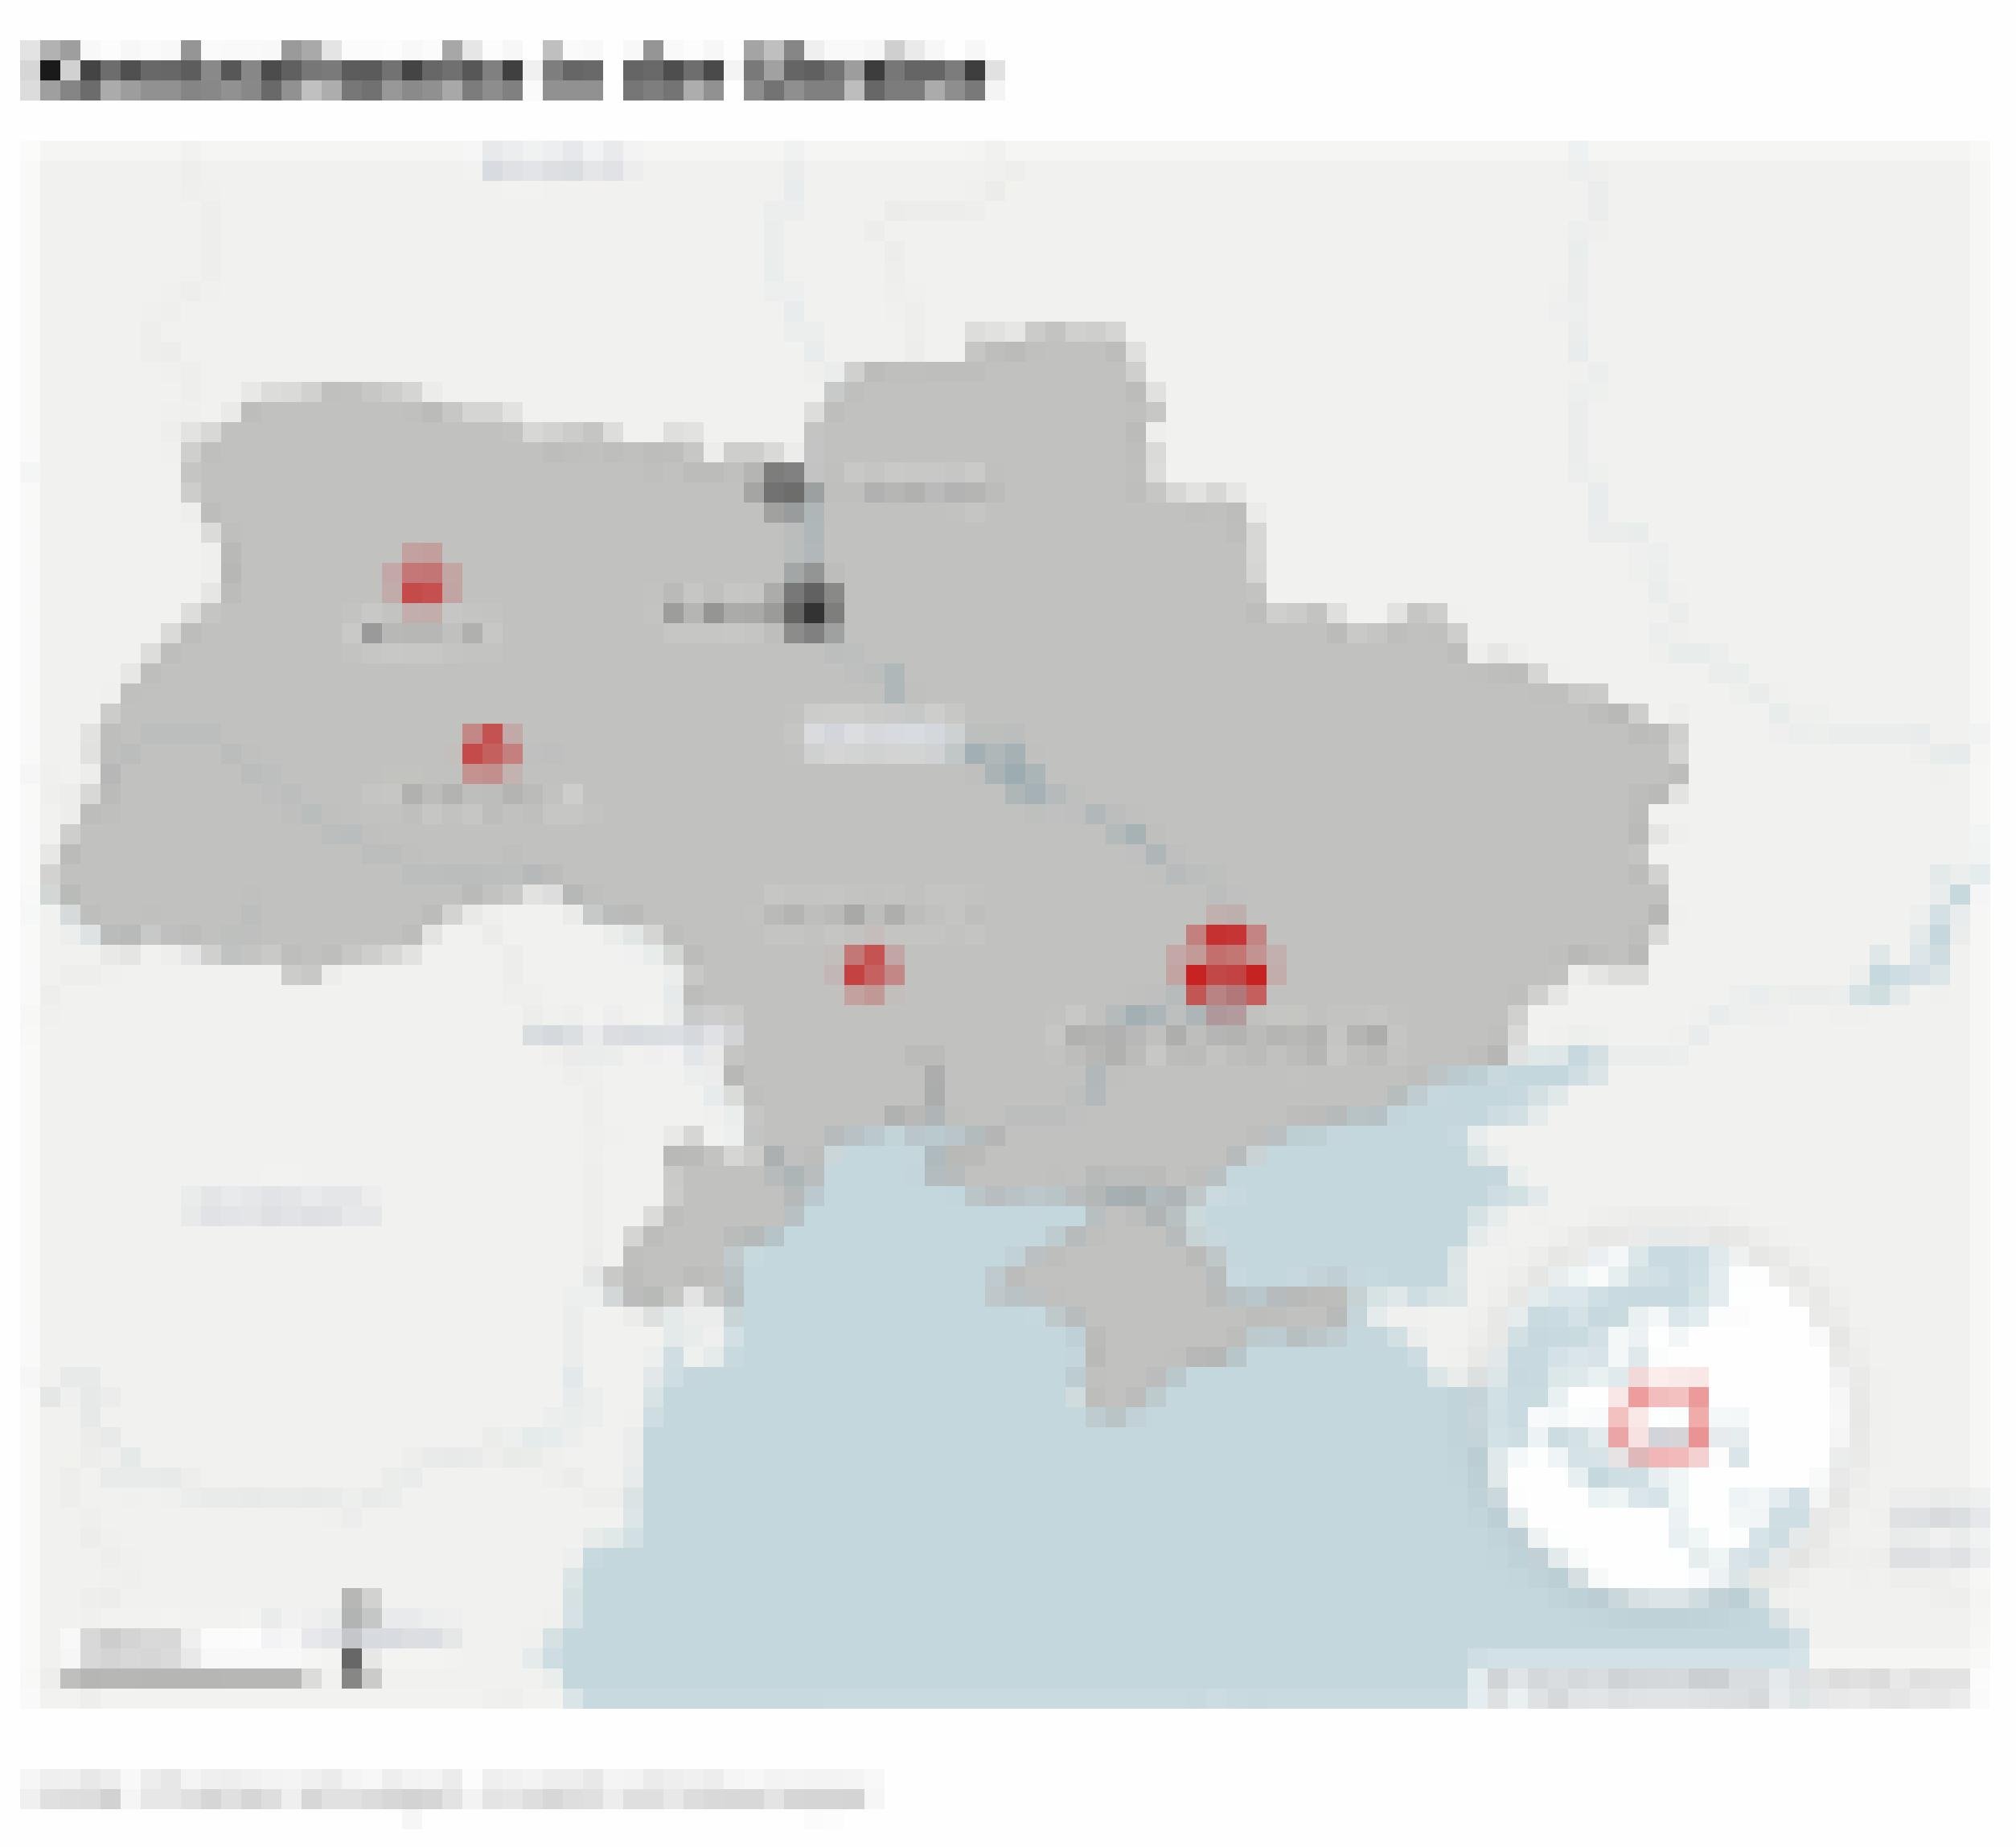 Landkarte der Ukraine mit den Standorten der Kernkraftwerke und der Hauptstadt Kiew.